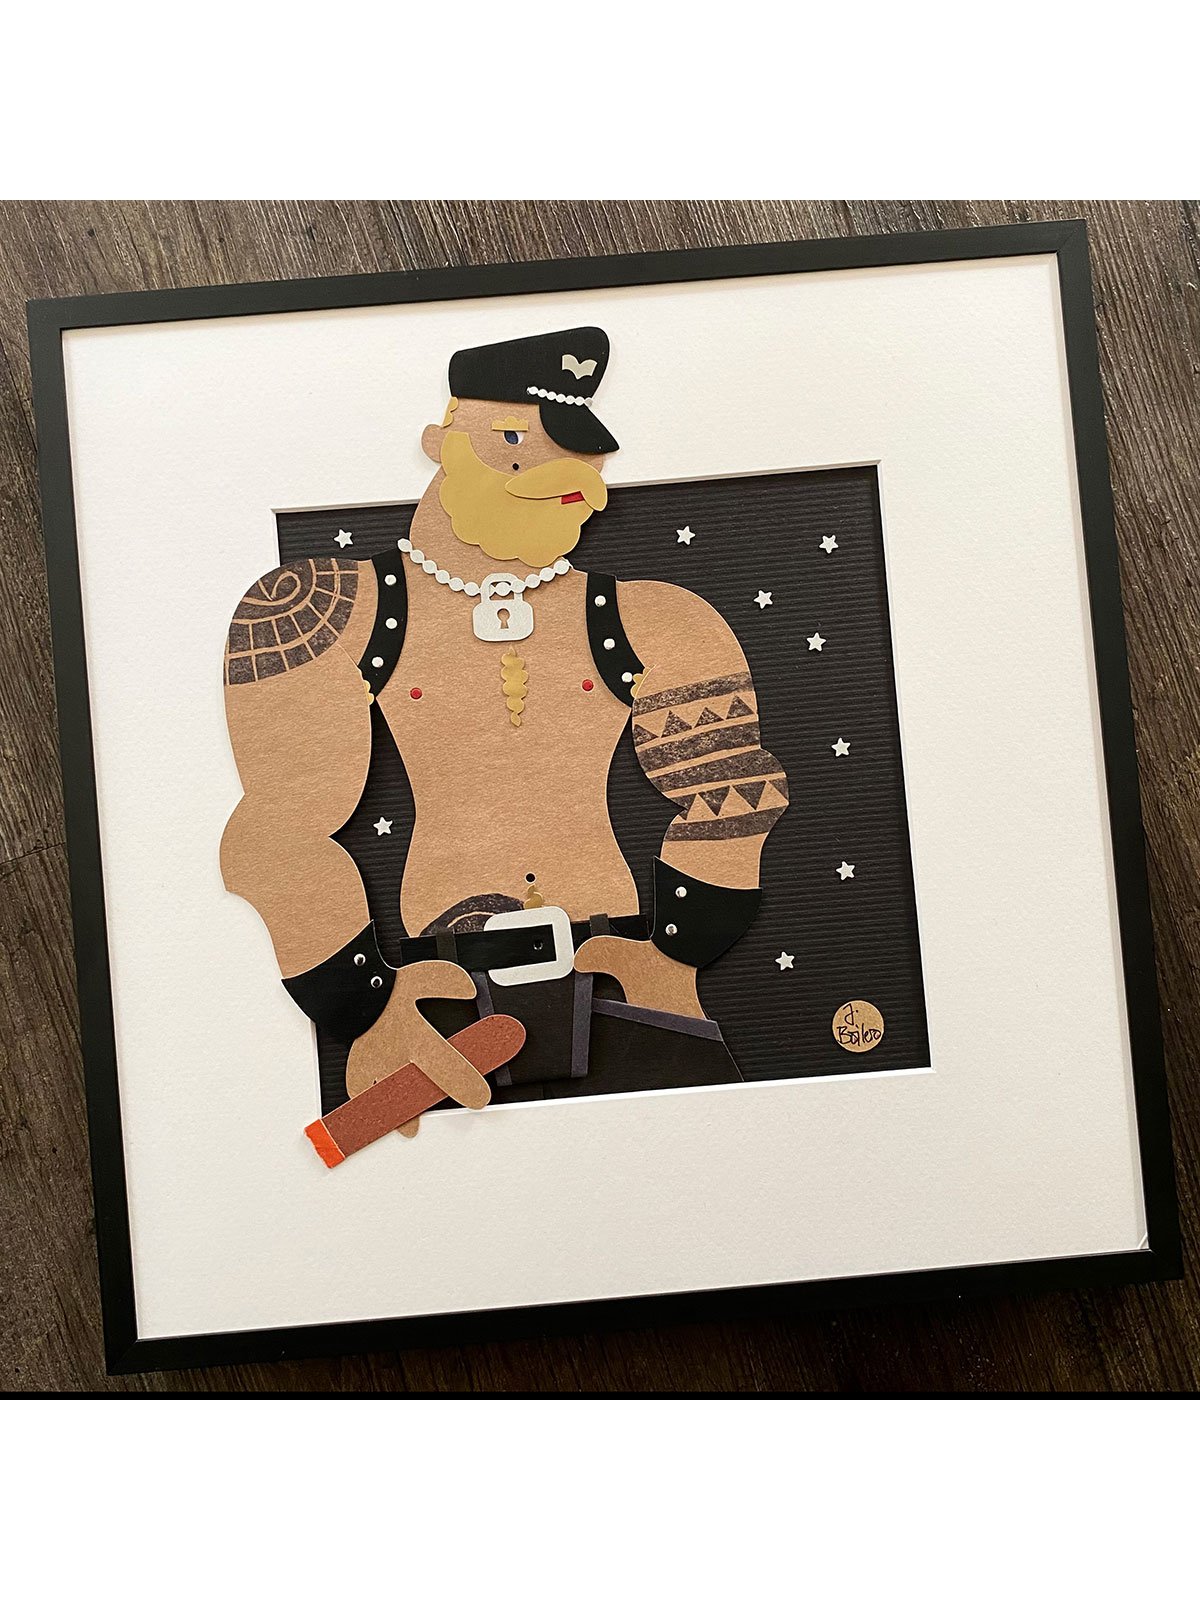 Collage "Berlin Cigar Man 2" 33 x 33 cm | Juan Boilero 